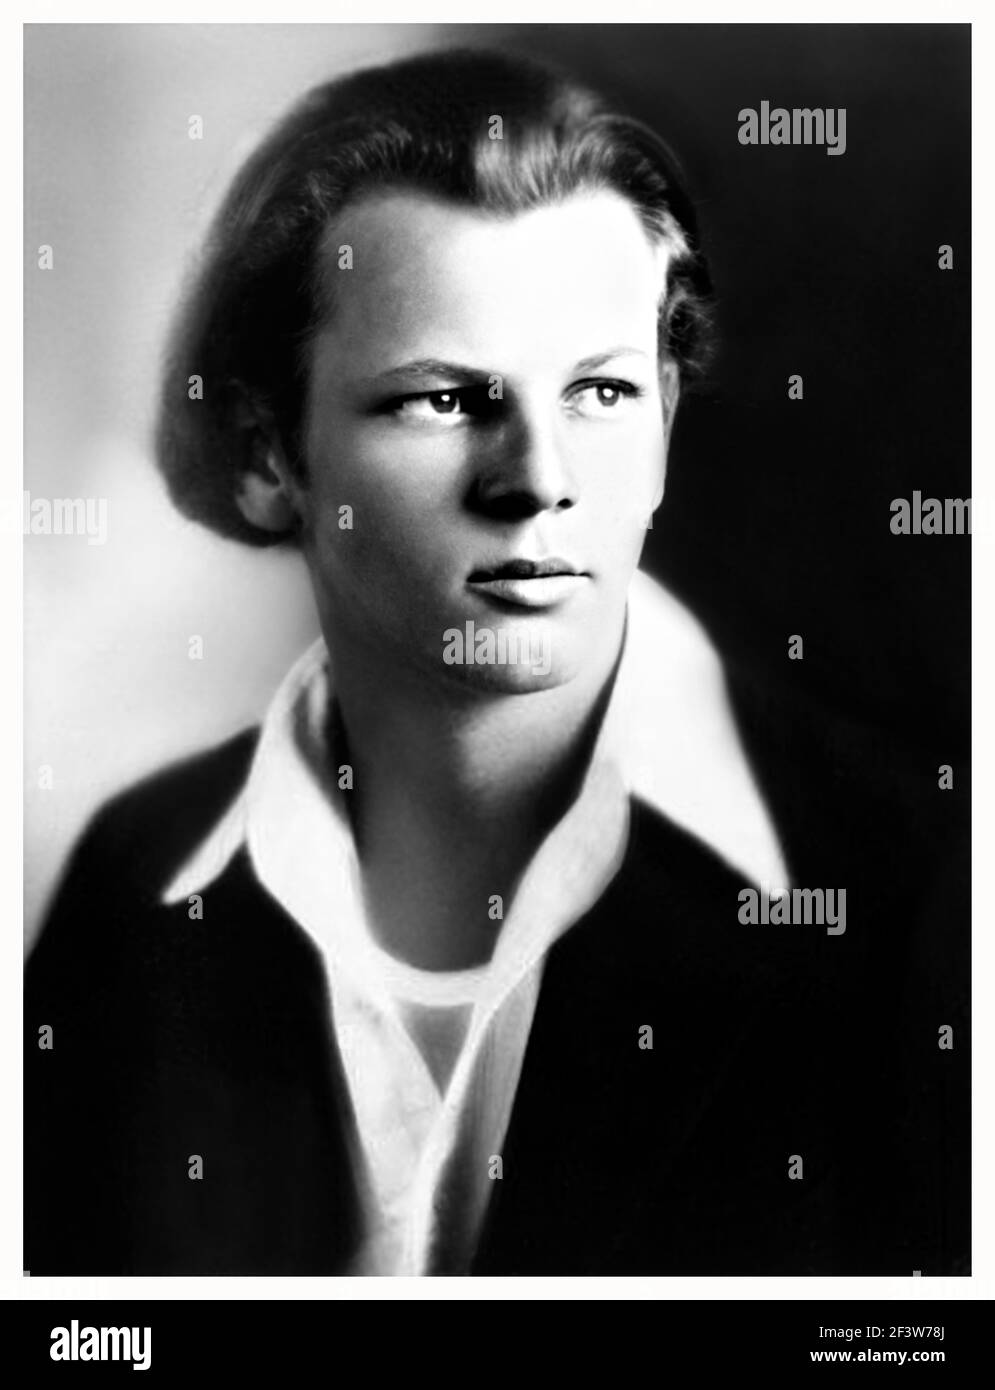 1928 Ca, USA : der gefeierte amerikanische Maler JACKSON POLLOCK ( 1912 - 1956 ) als Junge im Alter von 16 Jahren. Unbekannter Fotograf .- GESCHICHTE - FOTO STORICHE - PITTORE INFORMALE - ARTE - KUNST - KUNST - personalità da giovani giovane - Persönlichkeit Persönlichkeiten als jung war - Kragen - colletto --- ARCHIVIO GBB Stockfoto